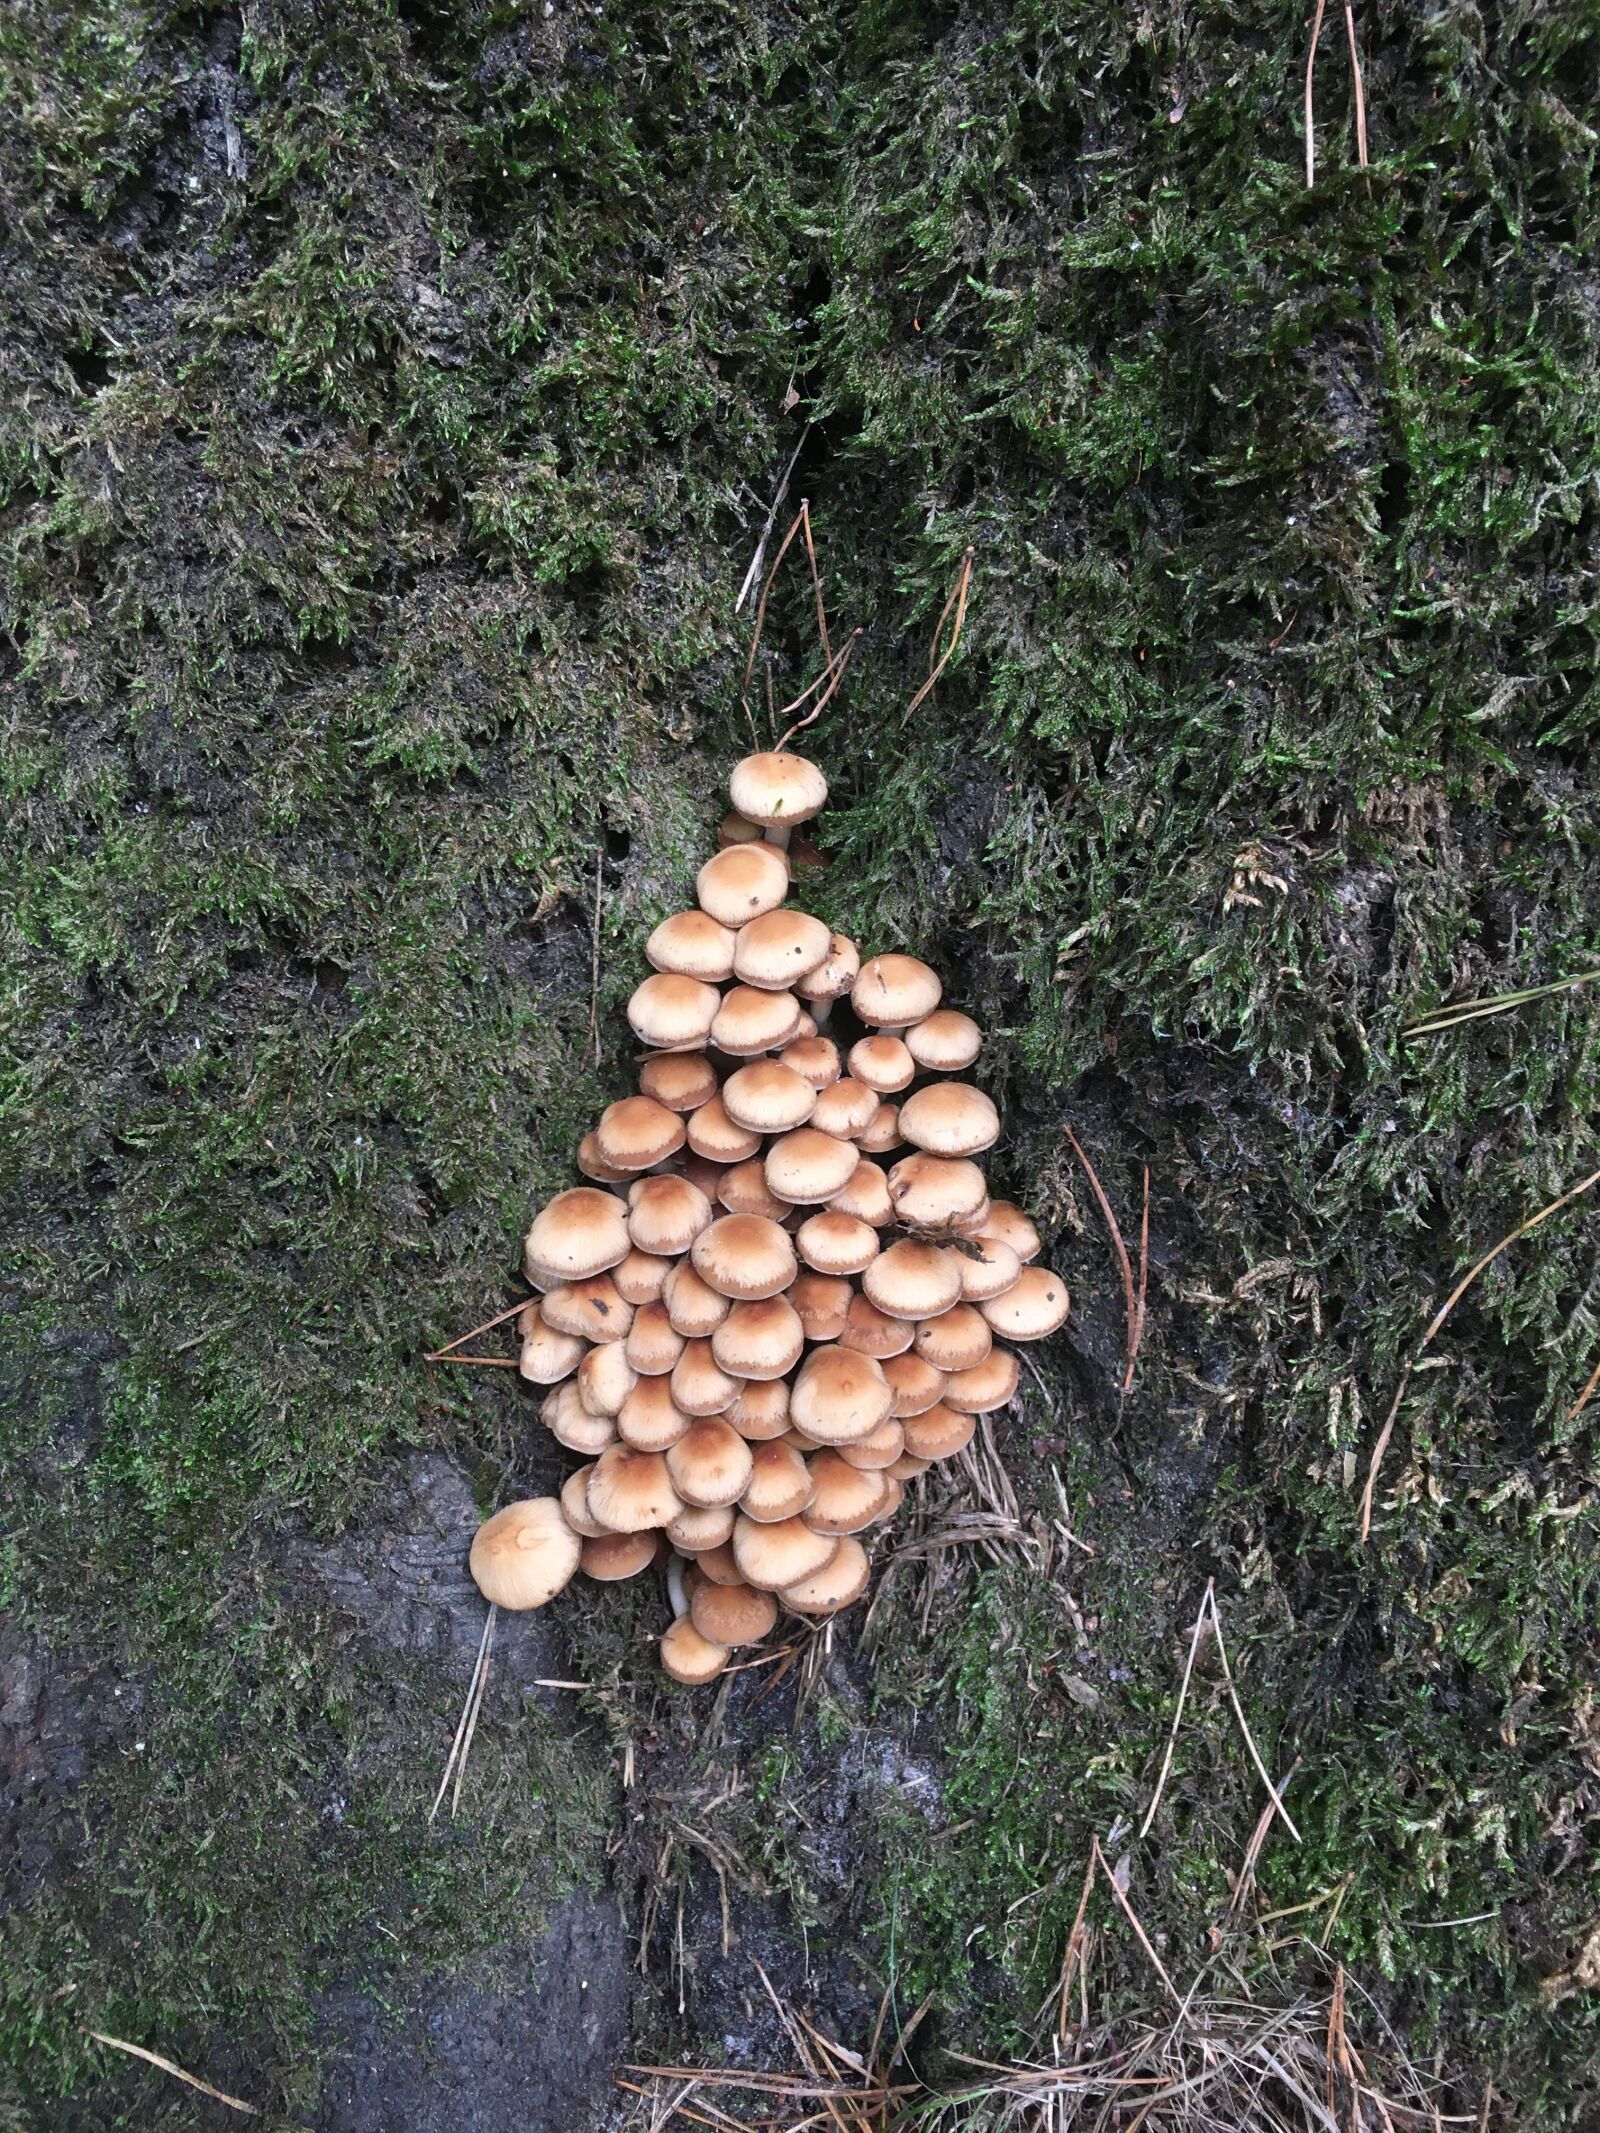 Apple iPhone SE (1st generation) sample photo. Fungi, autumn, nature photography